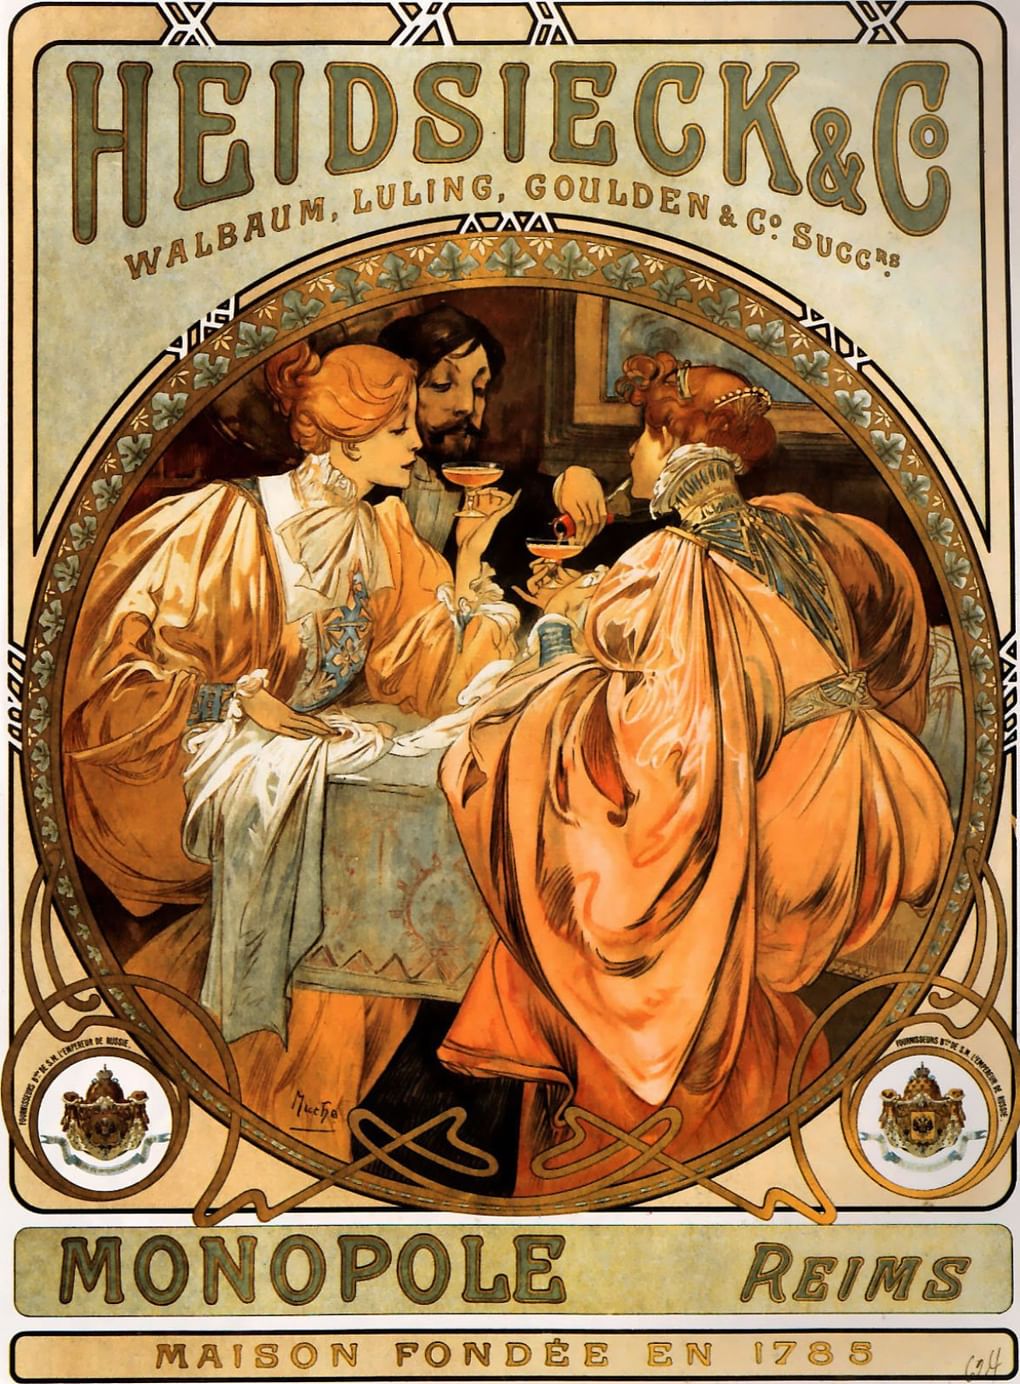 А. Муха. Реклама Heidsieck & Co. 1901